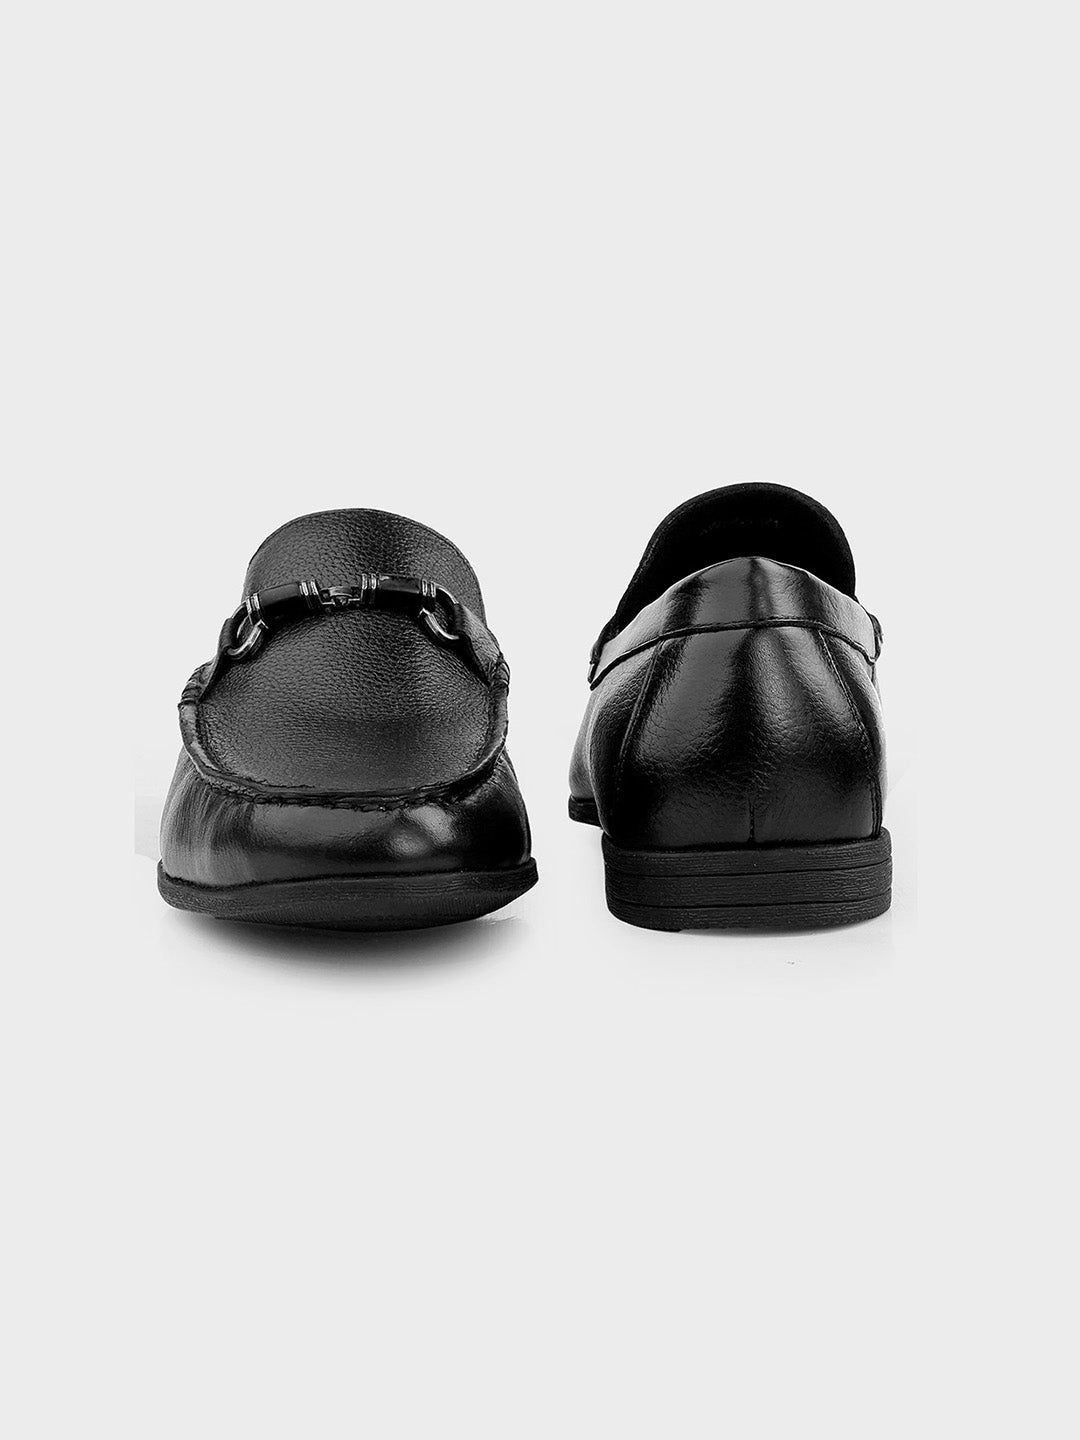 Black Leather Slip-on Loafer for Men